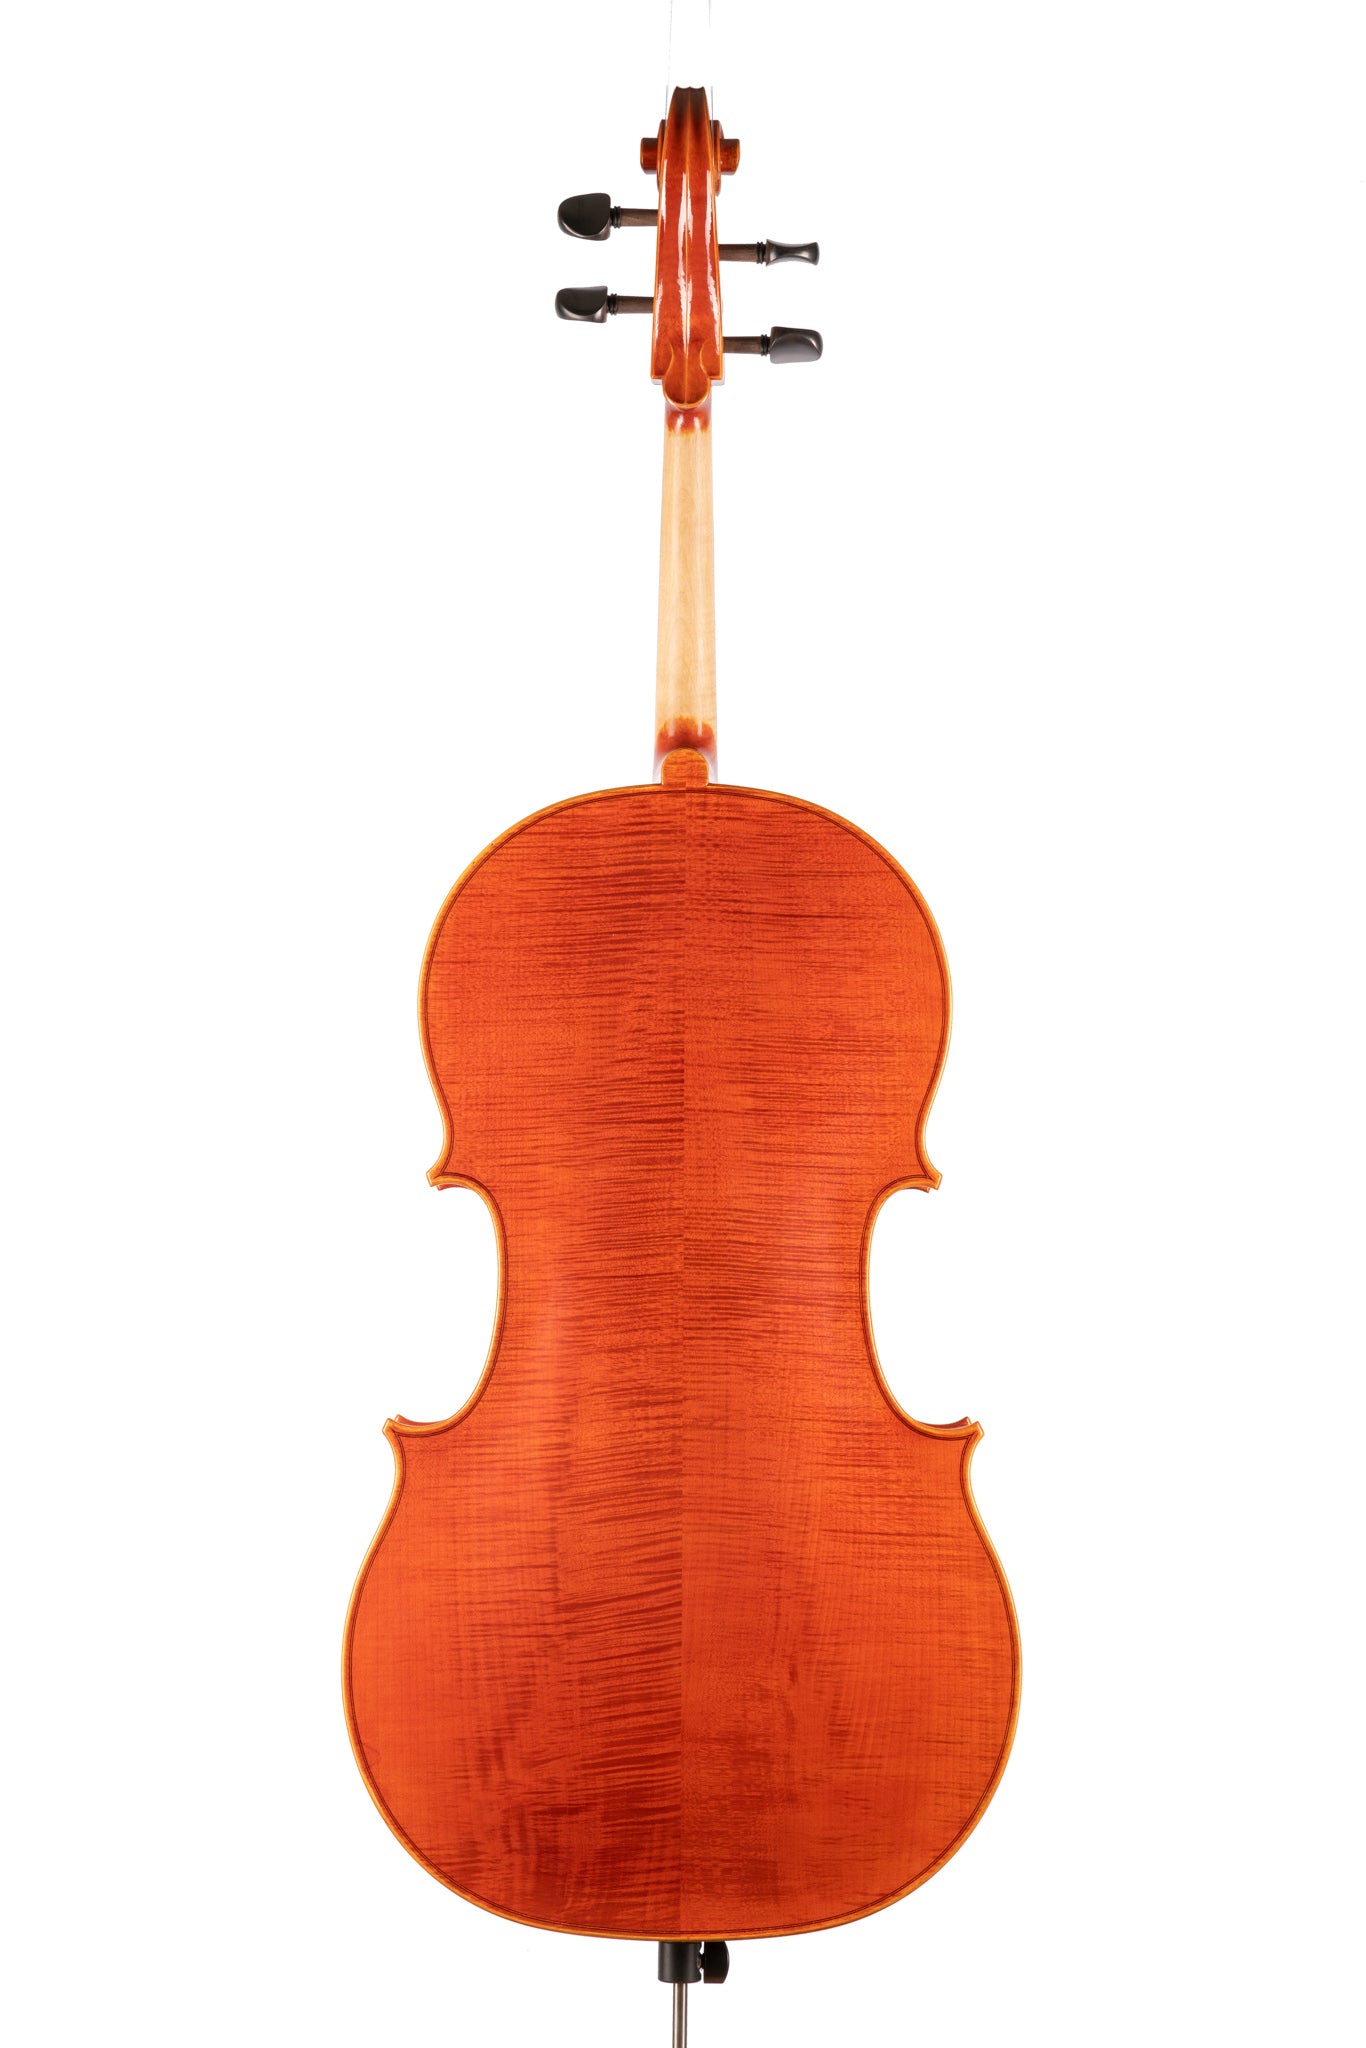 BL-600 Cello